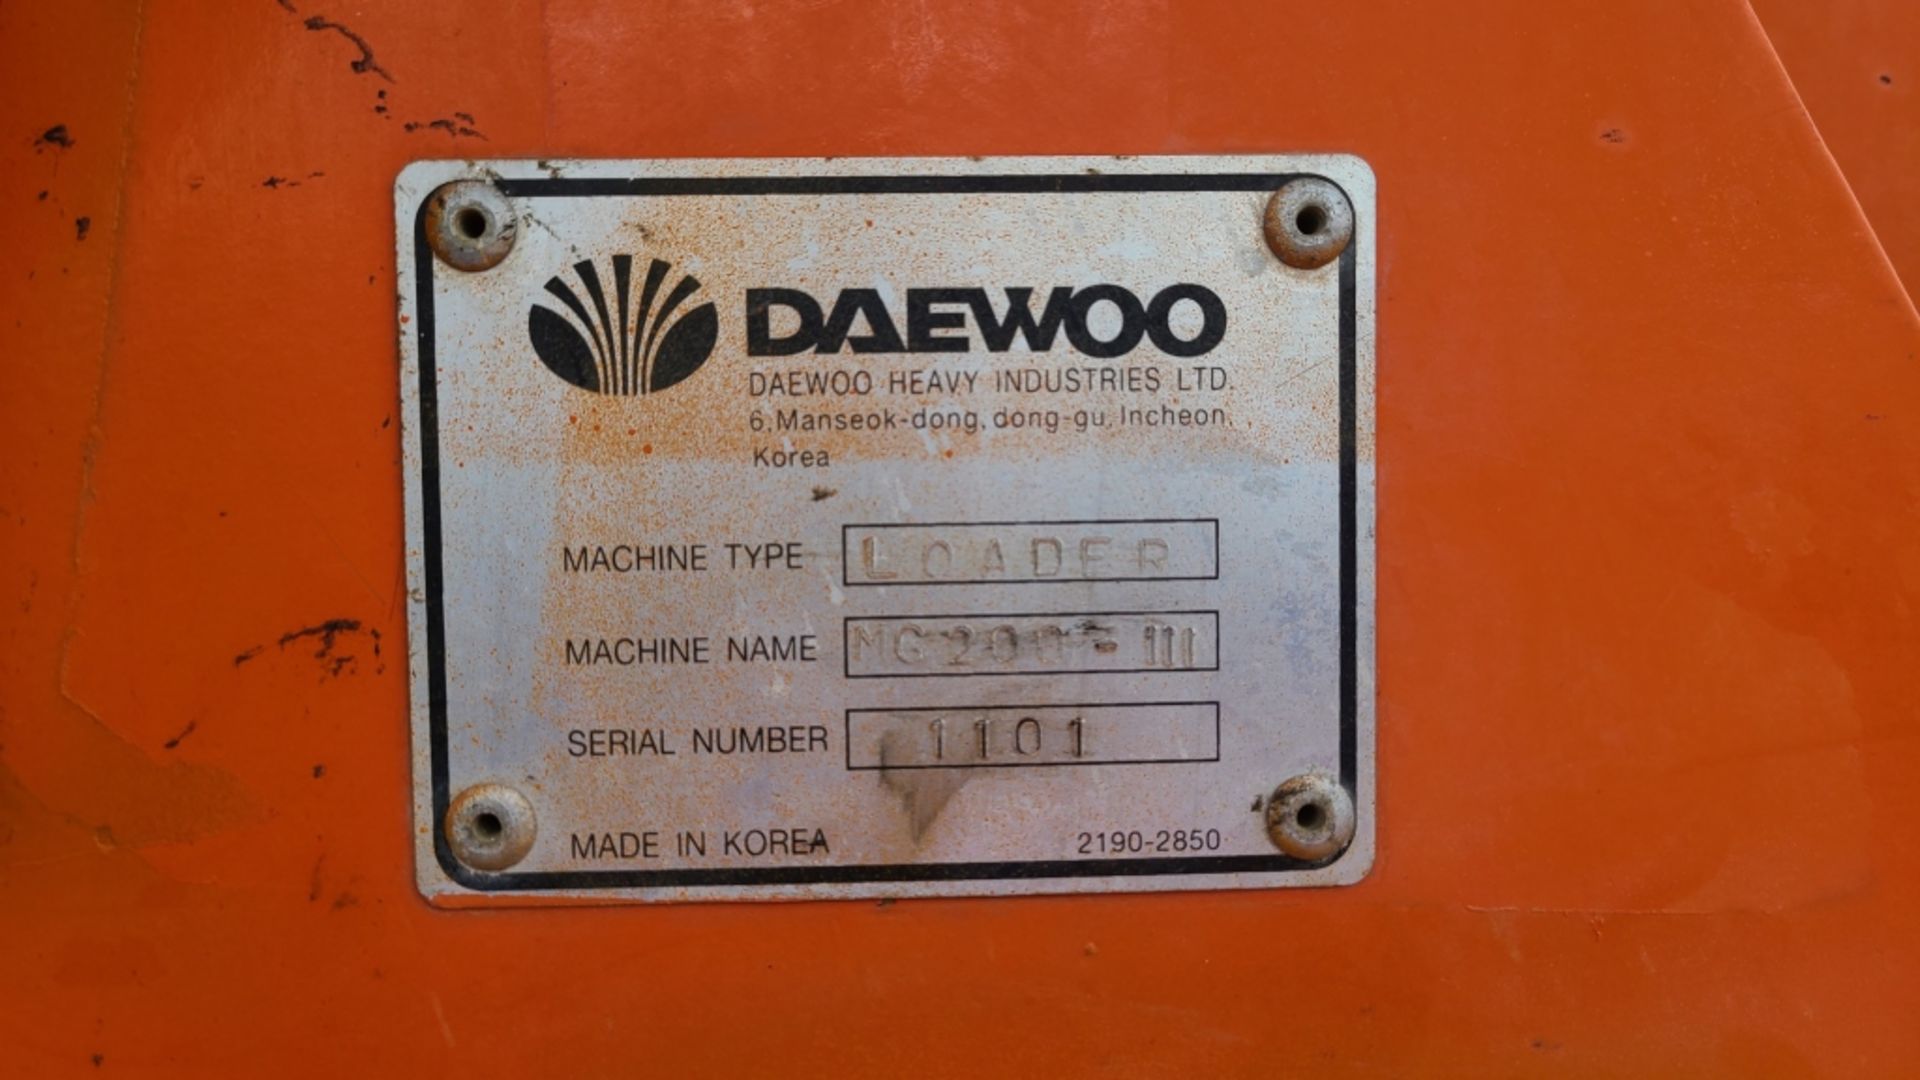 2000 Daewoo Mg200-iii Wheel Loader - Image 11 of 13